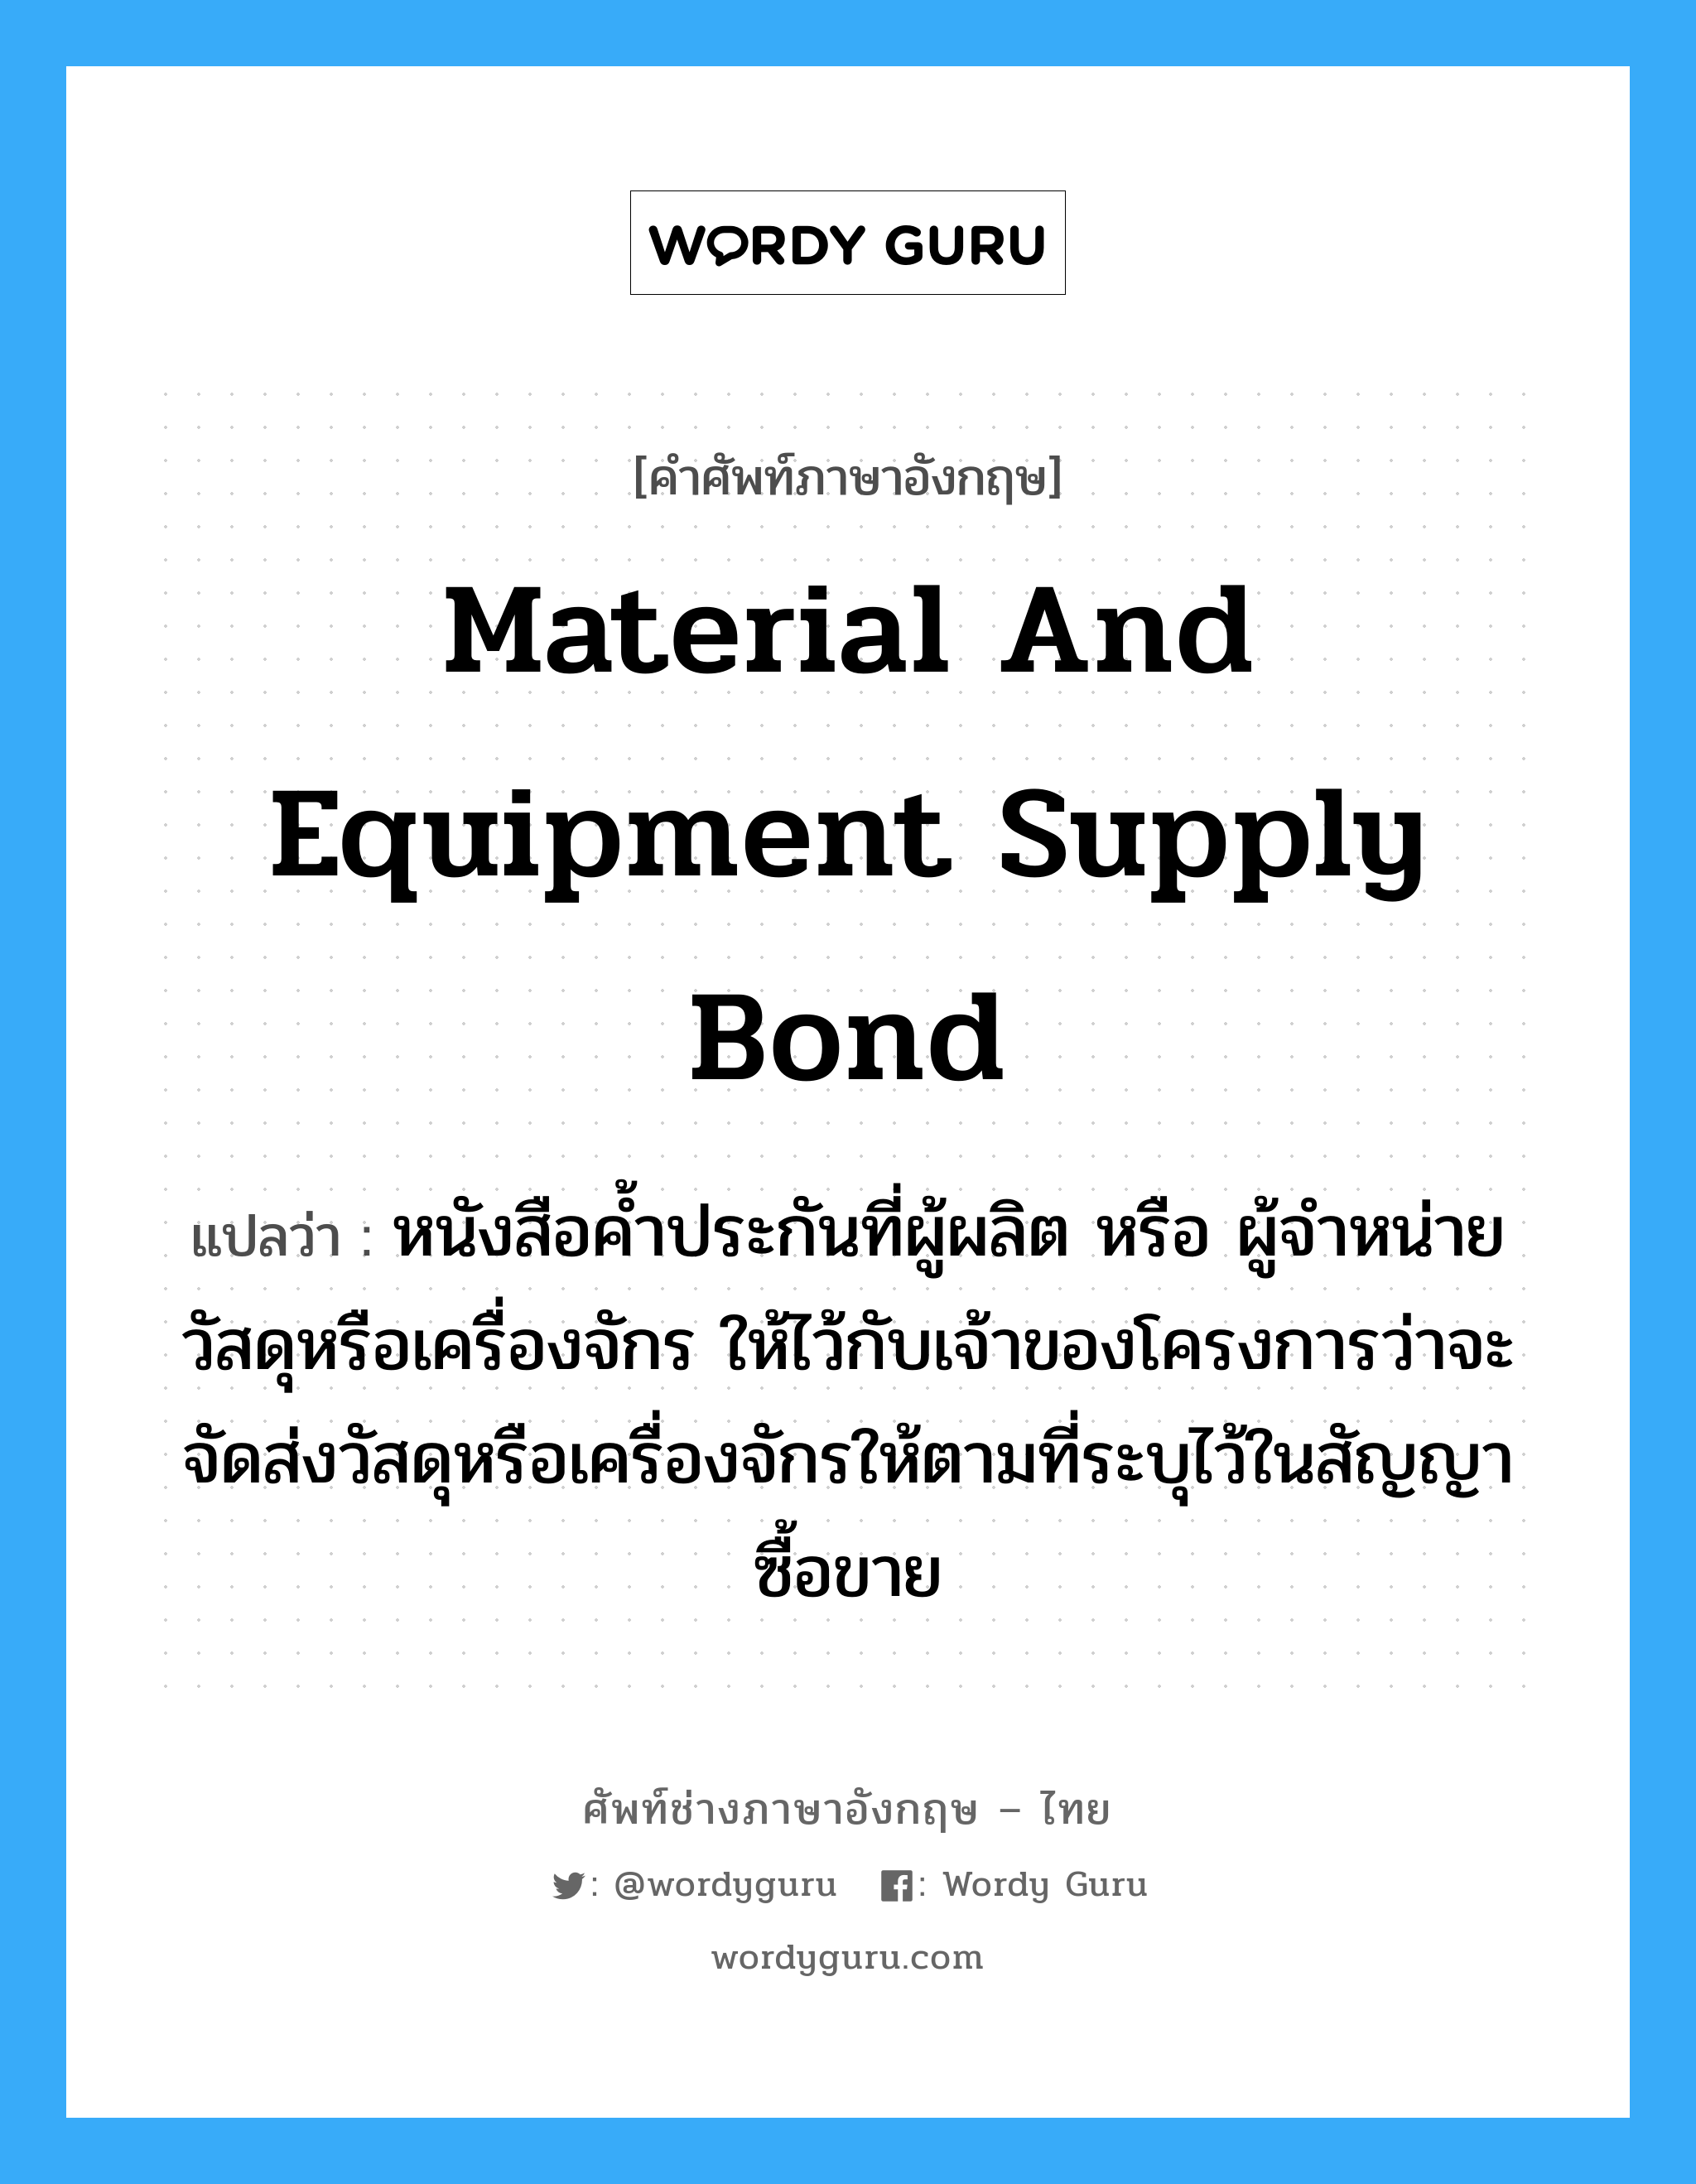 Material and Equipment Supply Bond แปลว่า?, คำศัพท์ช่างภาษาอังกฤษ - ไทย Material and Equipment Supply Bond คำศัพท์ภาษาอังกฤษ Material and Equipment Supply Bond แปลว่า หนังสือค้ำประกันที่ผู้ผลิต หรือ ผู้จำหน่ายวัสดุหรือเครื่องจักร ให้ไว้กับเจ้าของโครงการว่าจะจัดส่งวัสดุหรือเครื่องจักรให้ตามที่ระบุไว้ในสัญญาซื้อขาย